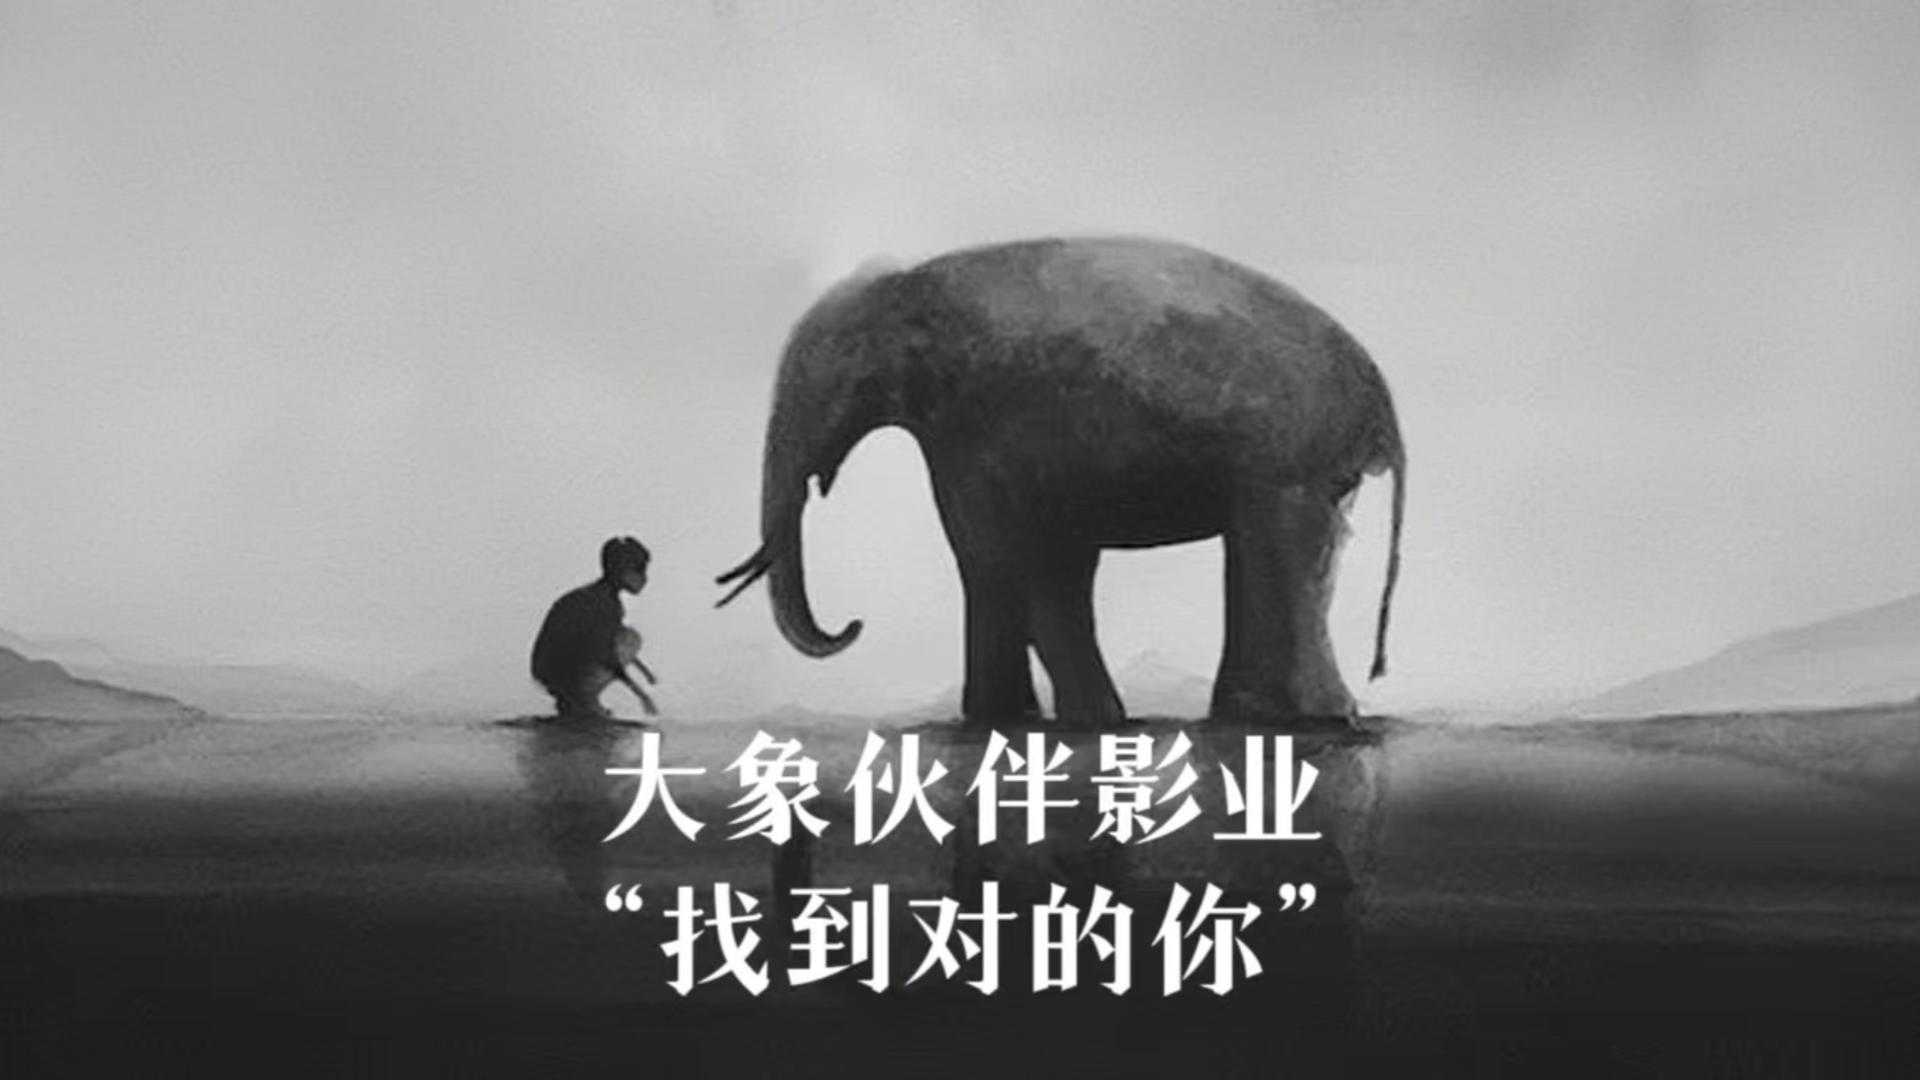 大象伙伴影业宣传片